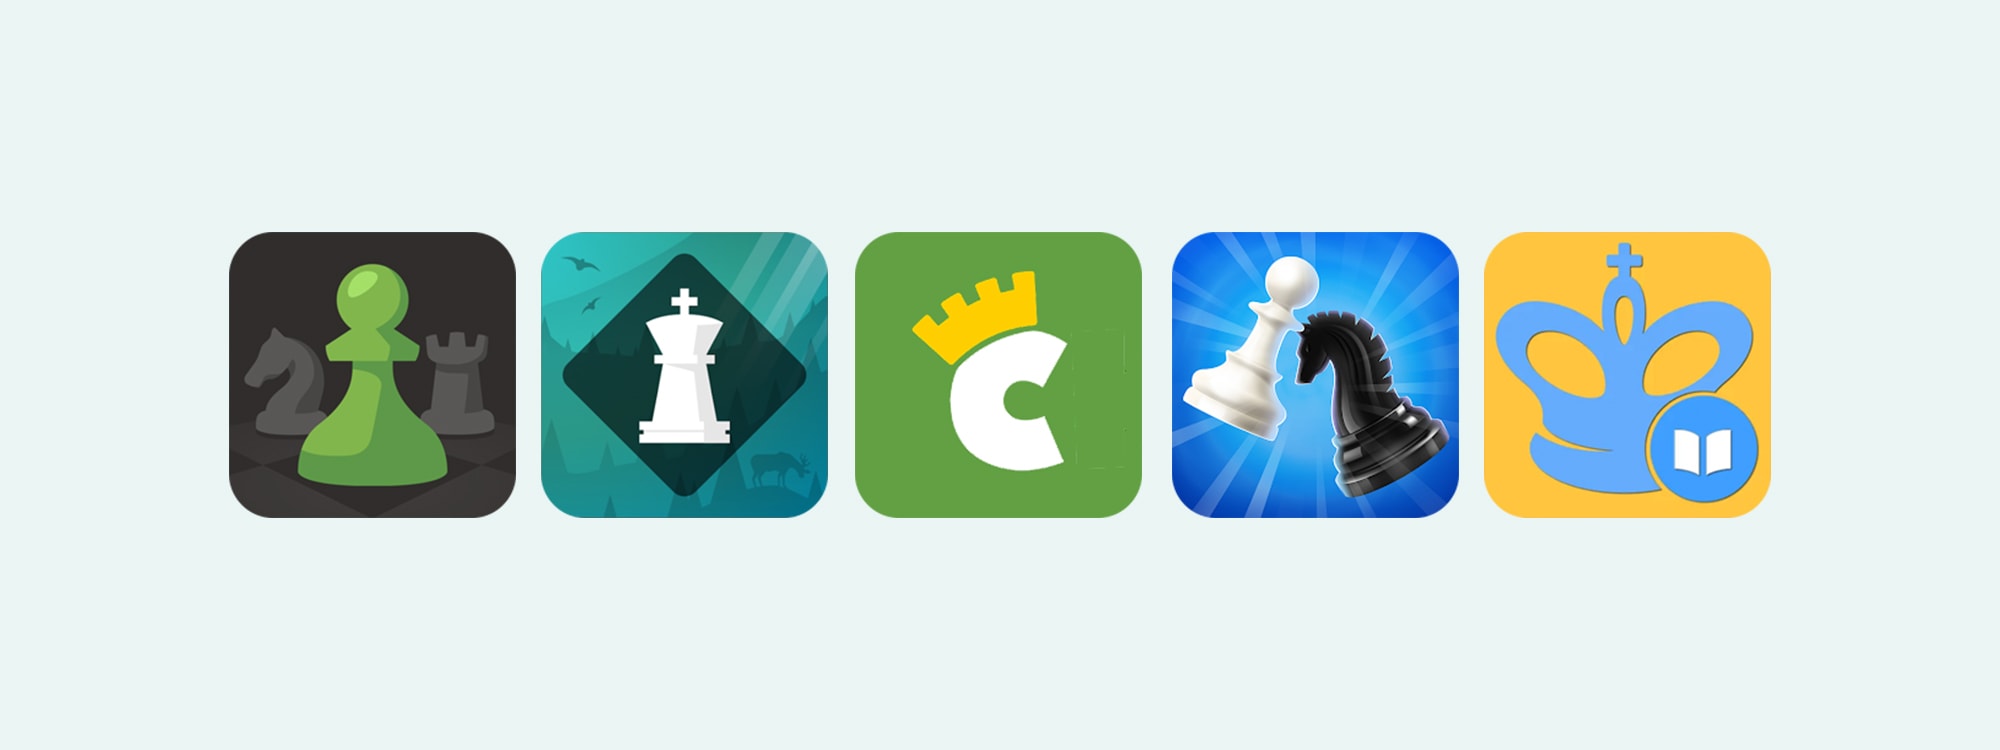 beste schaak apps om schaken te leren